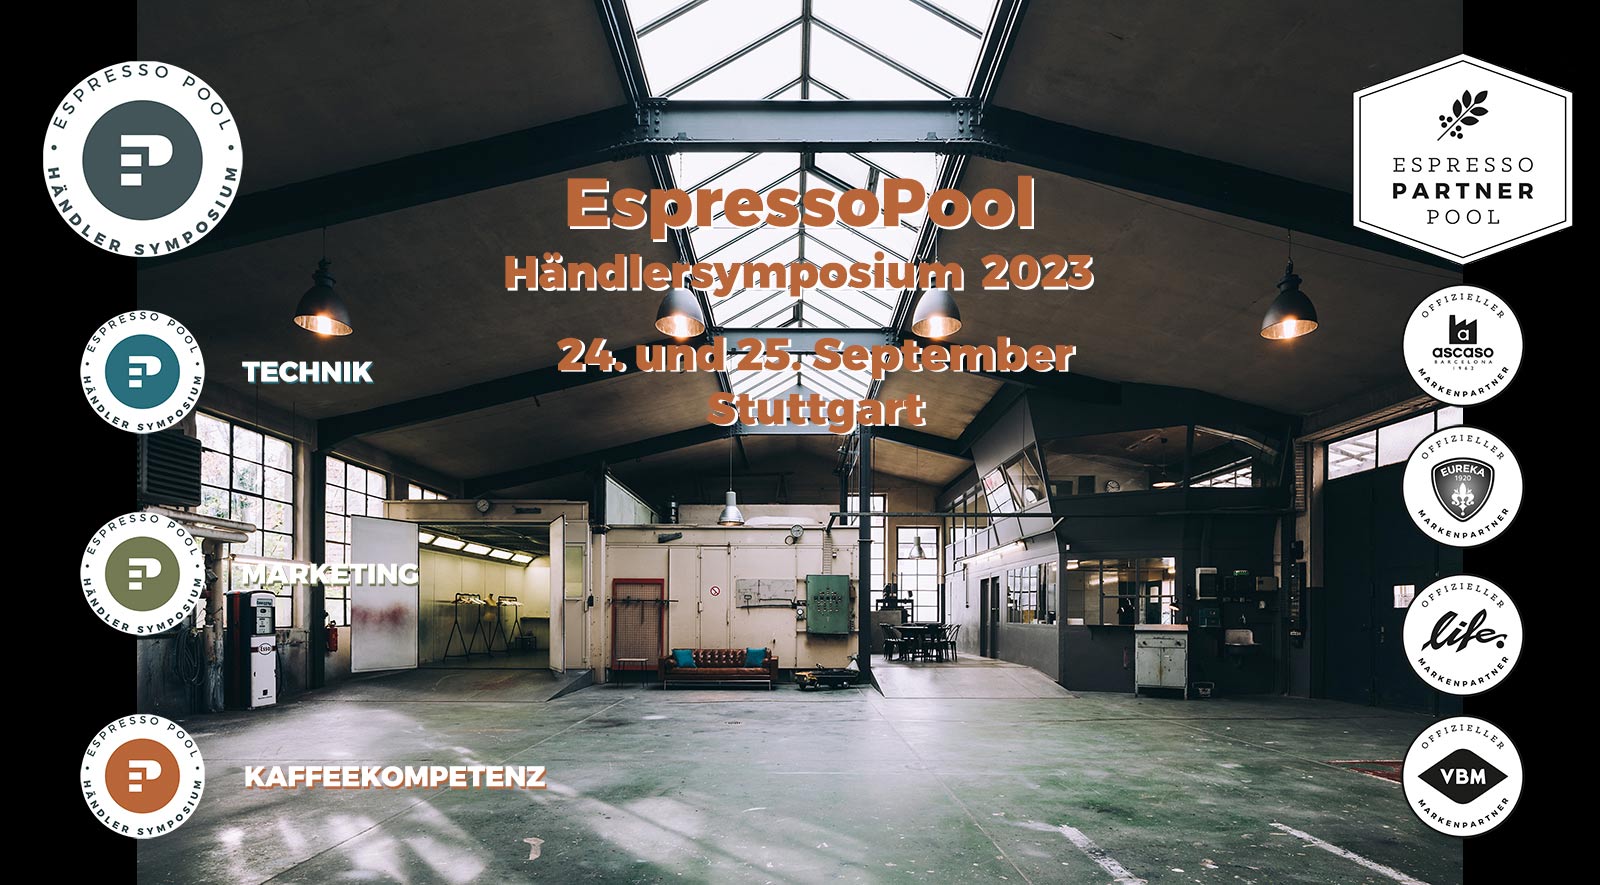 Das war das EspressoPool Händlersymposium 2023